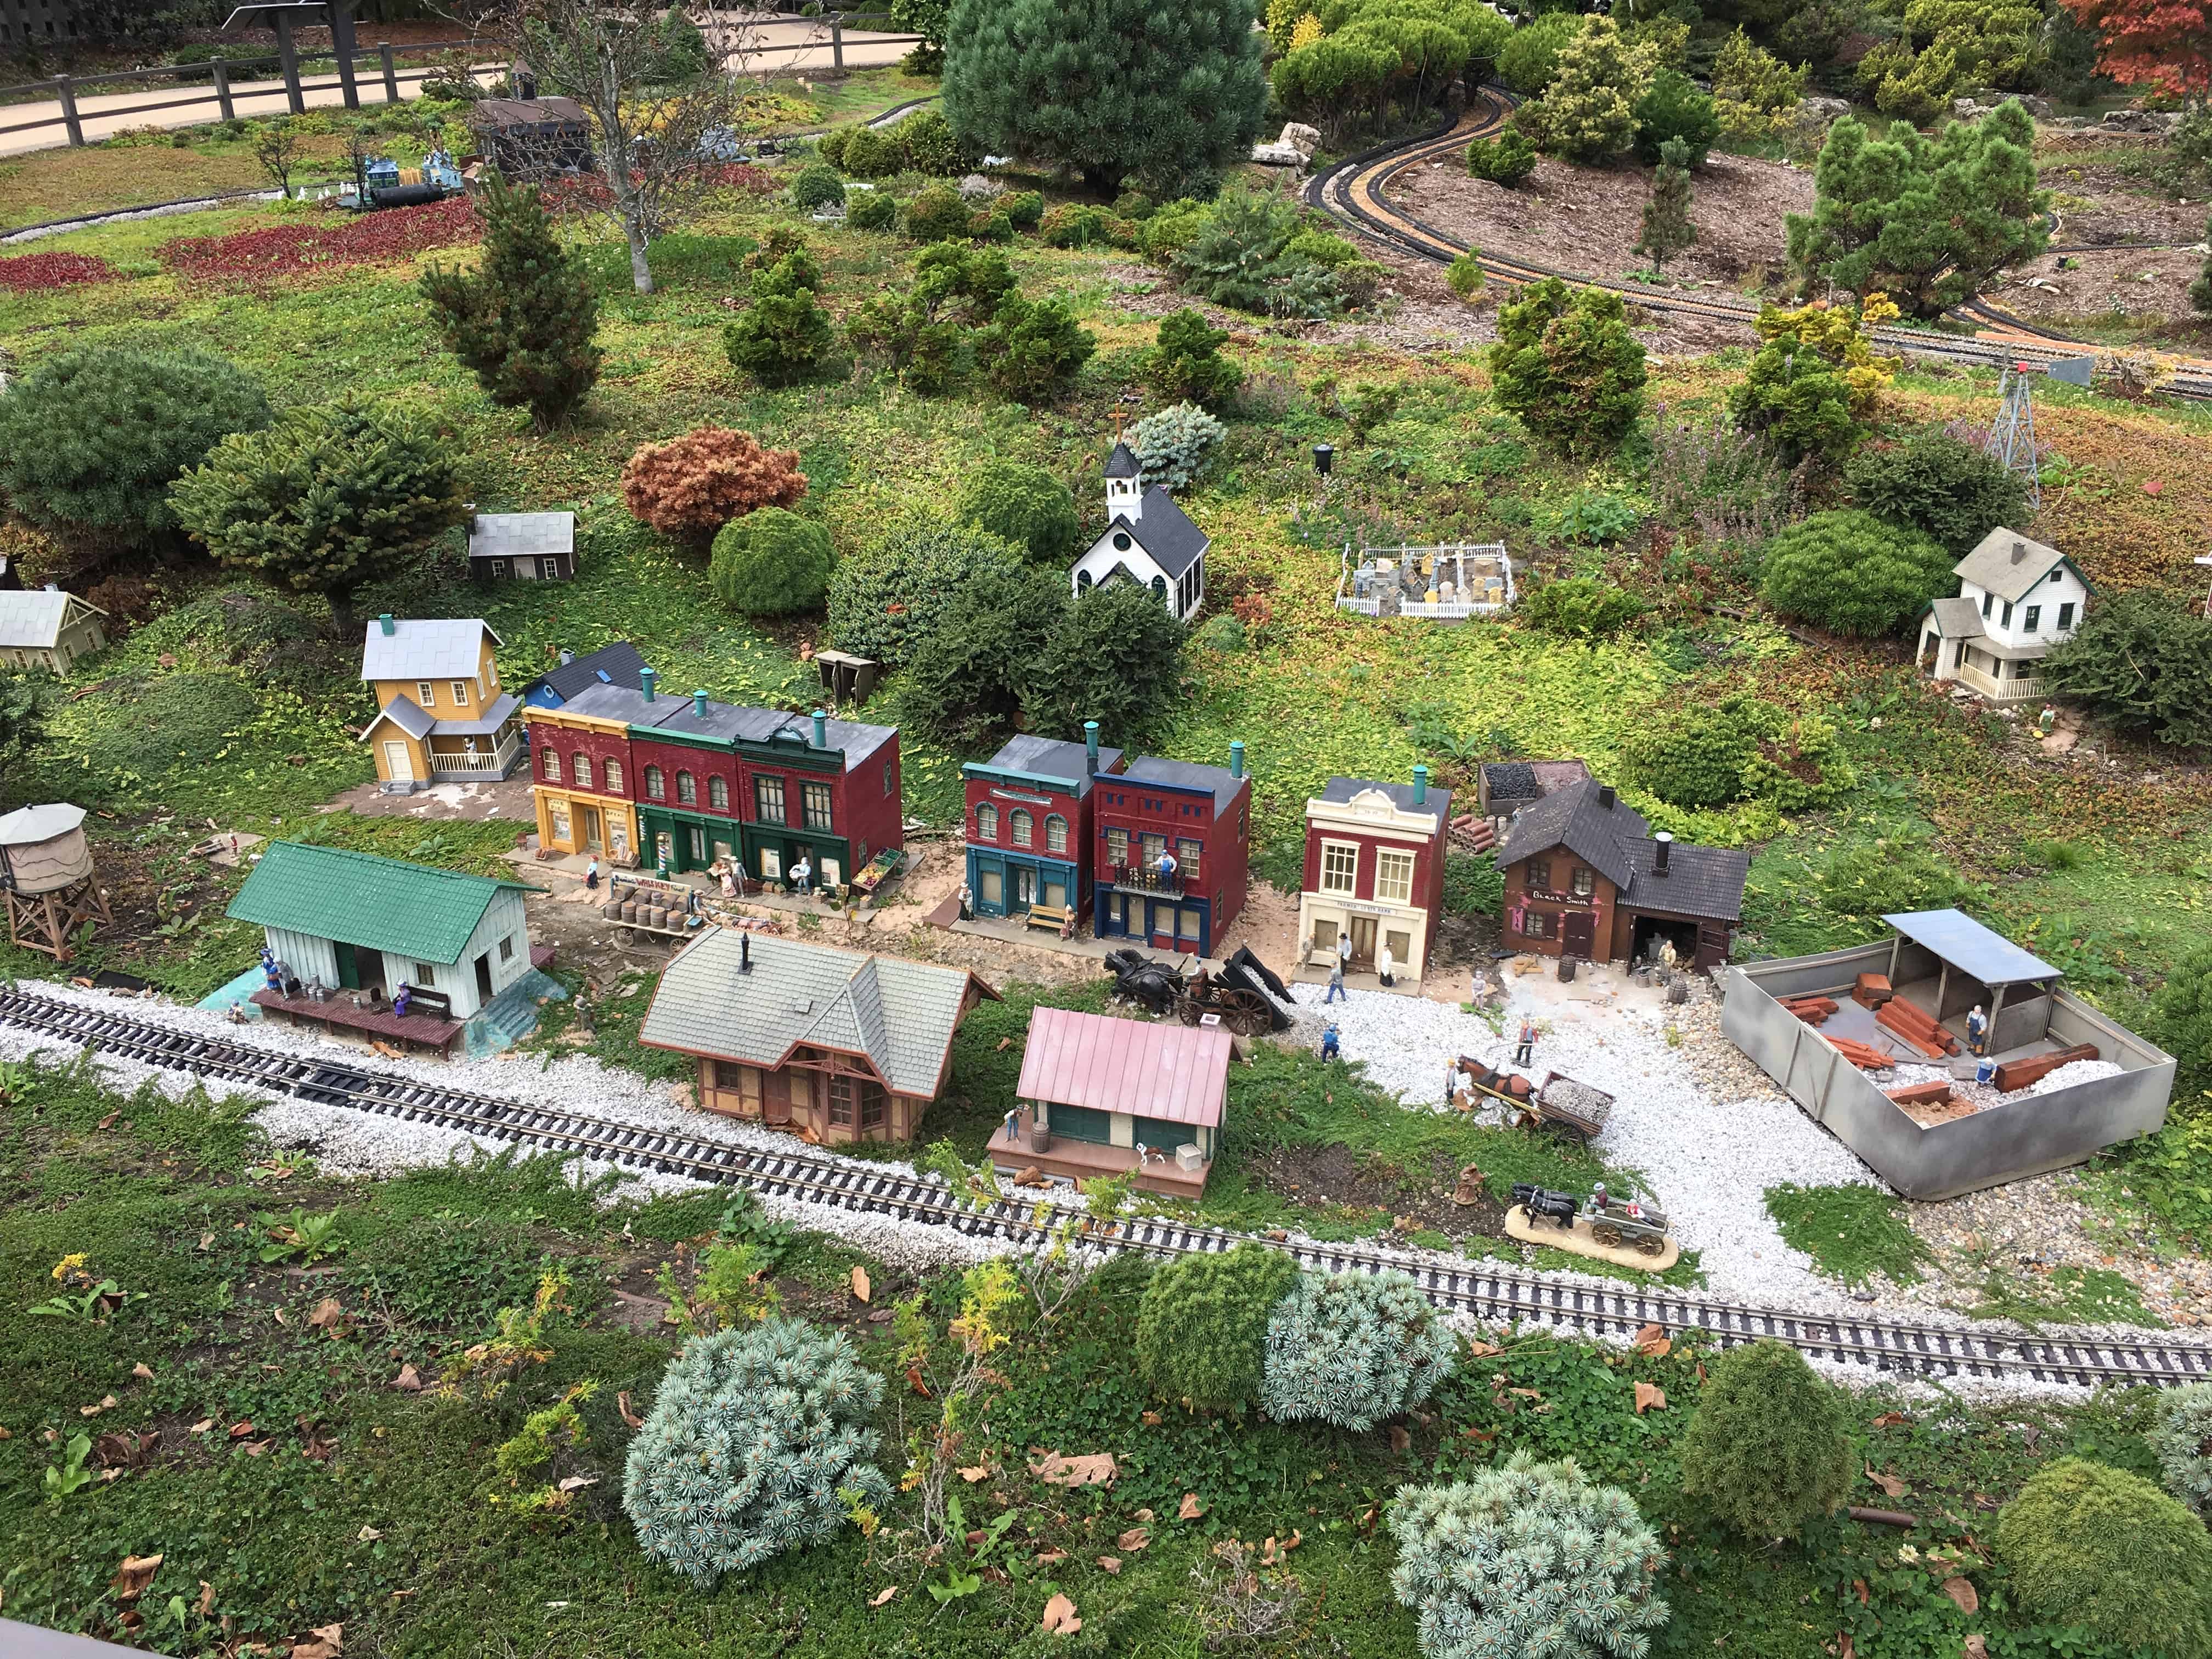 Railway Garden at Gabis Arboretum in Valparaiso, Indiana